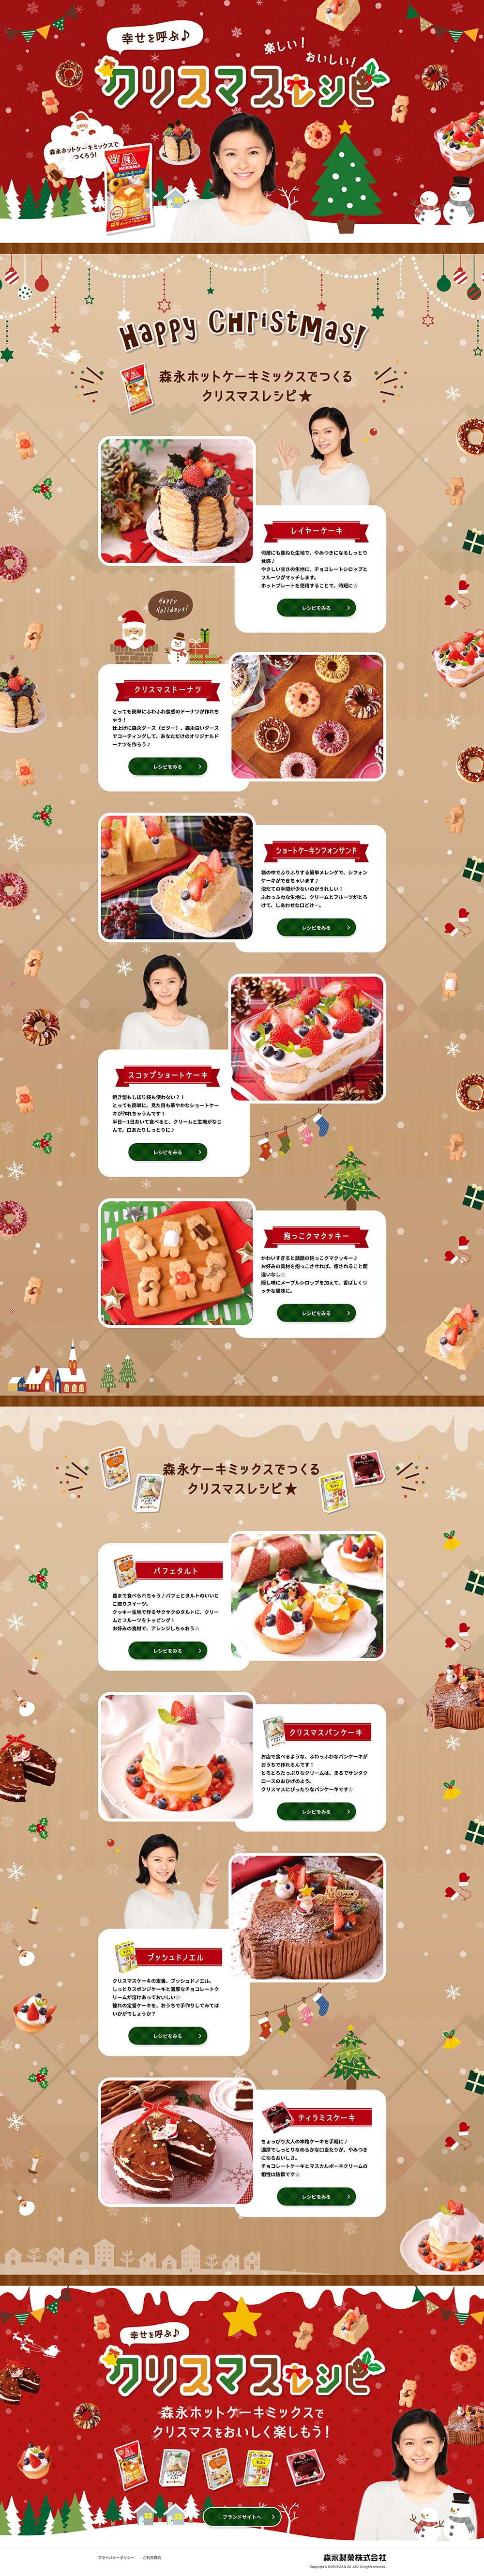 クリスマスレシピサイト公開